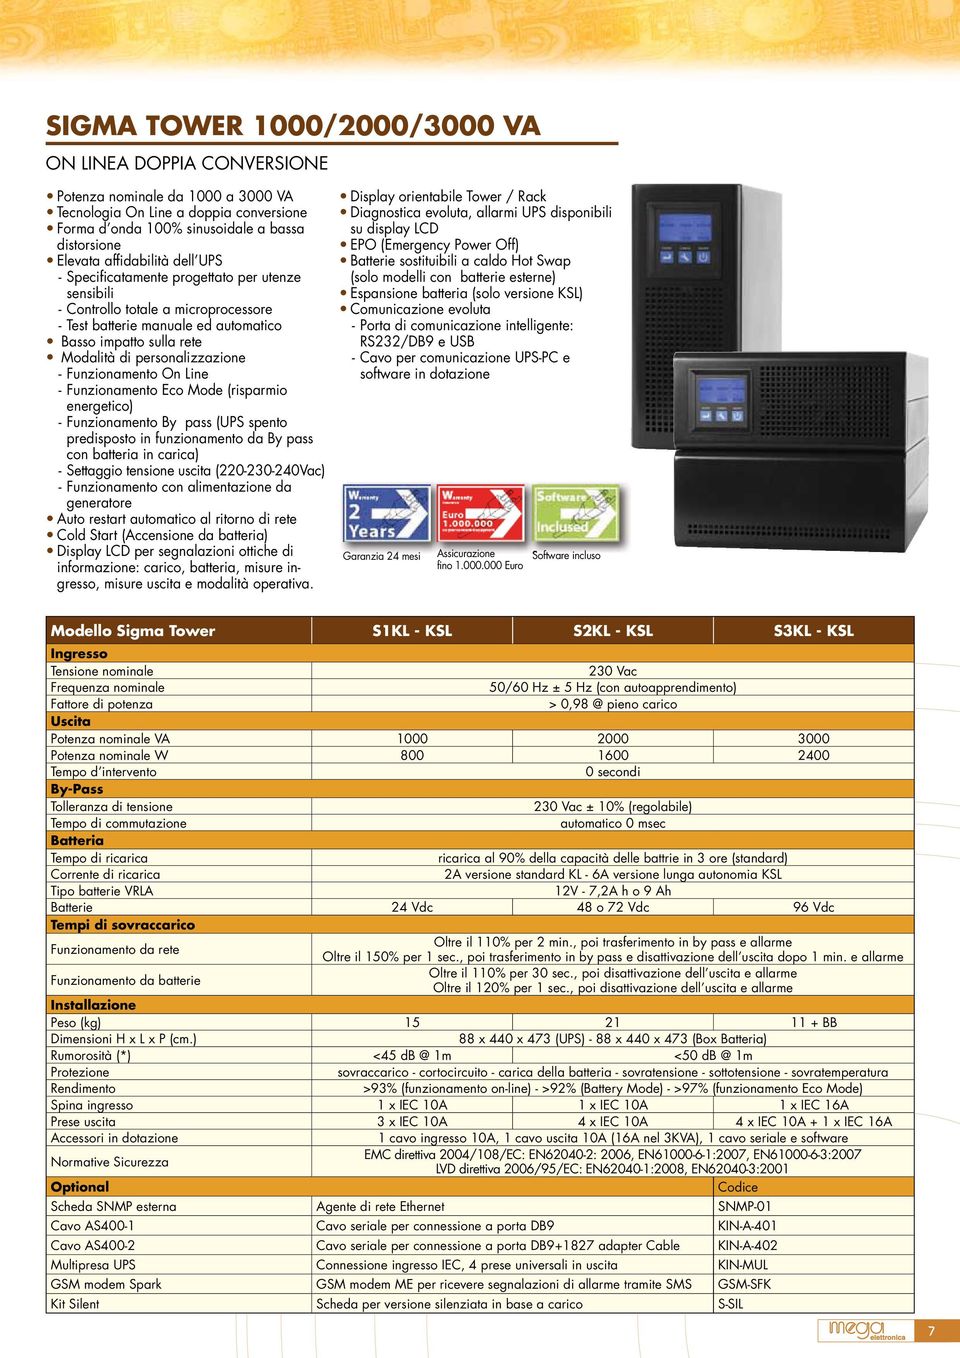 personalizzazione - Funzionamento On Line - Funzionamento Eco Mode (risparmio energetico) - Funzionamento By pass (UPS spento predisposto in funzionamento da By pass con batteria in carica) -